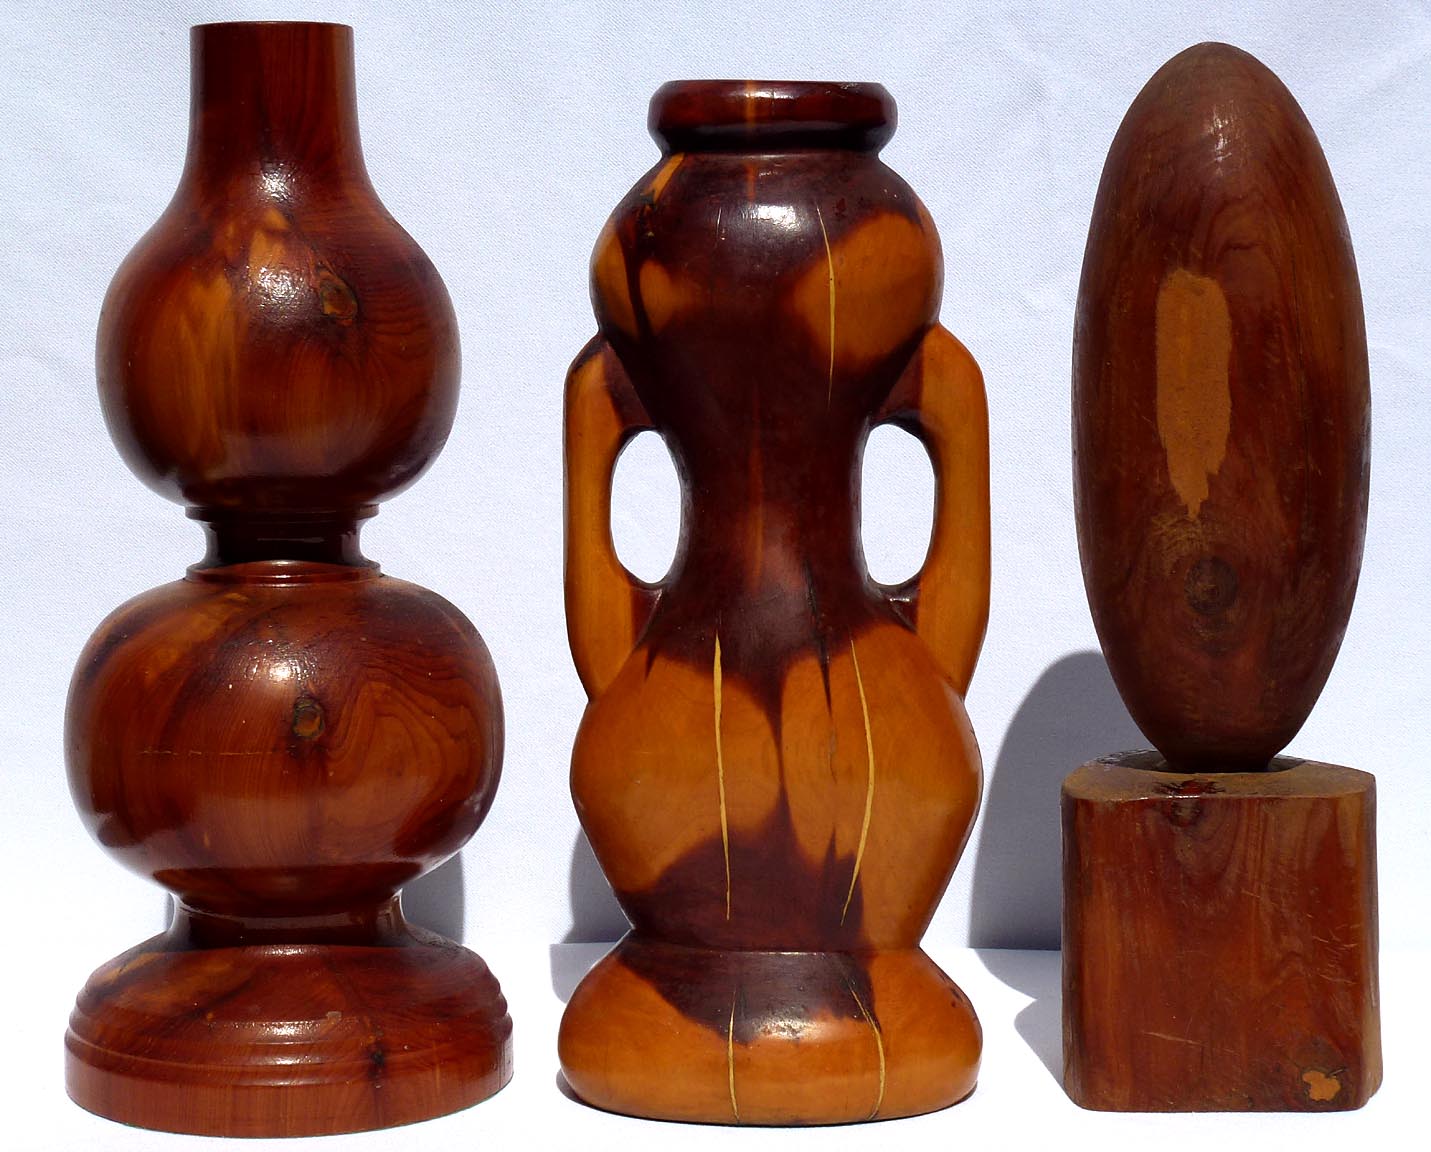 Set of Five Whimsical Cedar Carvings